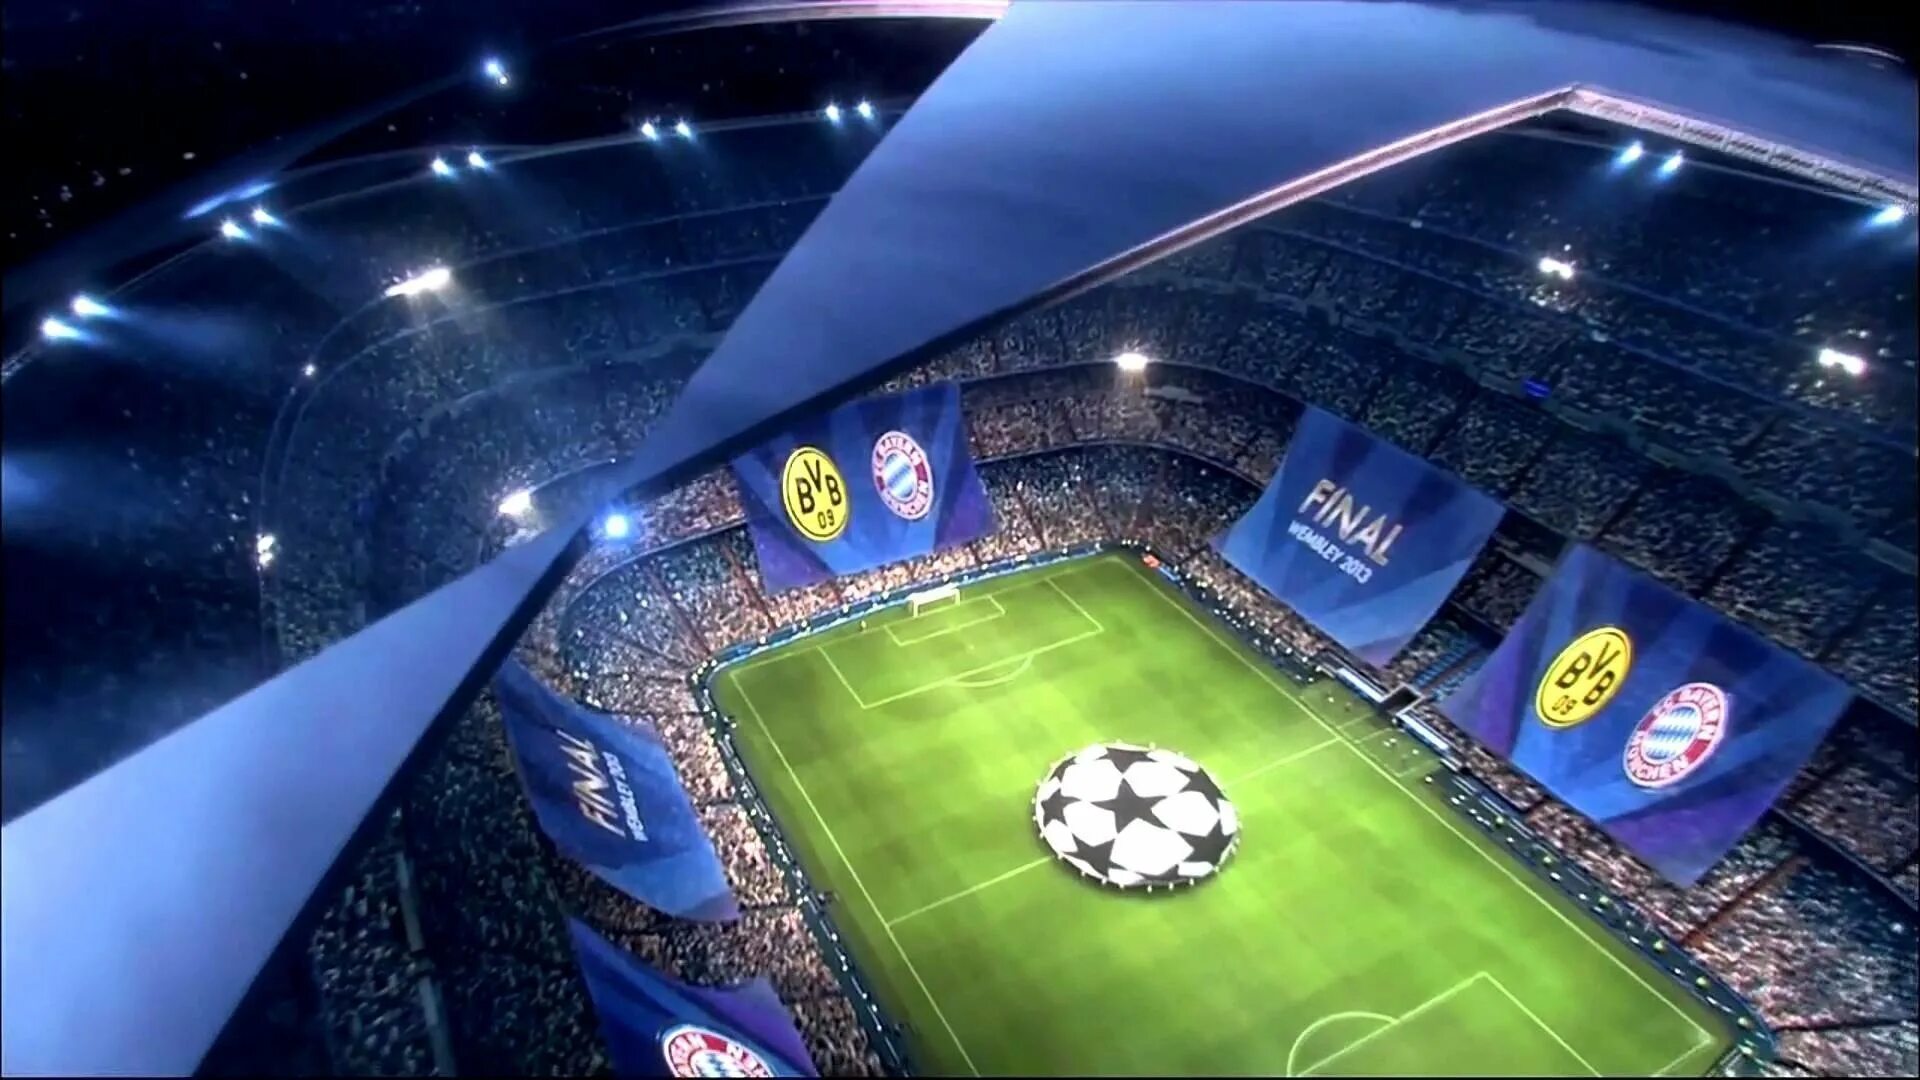 Футбол лч. UEFA Champions League. Футбольный стадион лига чемпионов. Стадион УЕФА. УЕФА лига чемпионов HD 1080.